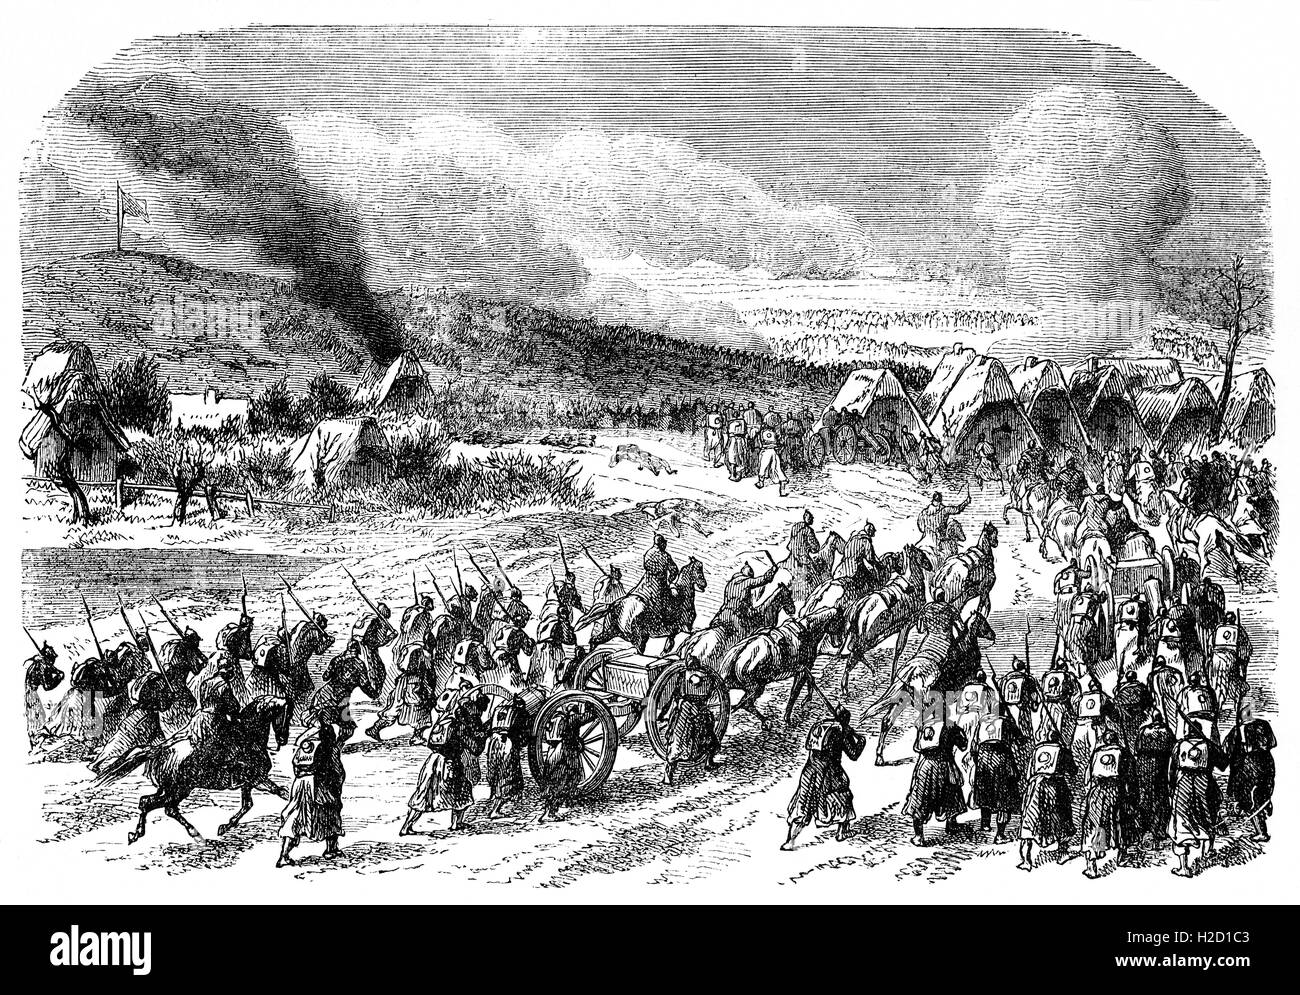 Soldaten in der Schlacht von Dybbølor oder Düfeel war die wichtige Schlacht des zweiten Krieges Schleswig und ereignete sich am Morgen des 18. April 1864 nach einer Belagerung, beginnend am 7. April. Dänemark erlitt eine schwere Niederlage gegen Preußen. Stockfoto